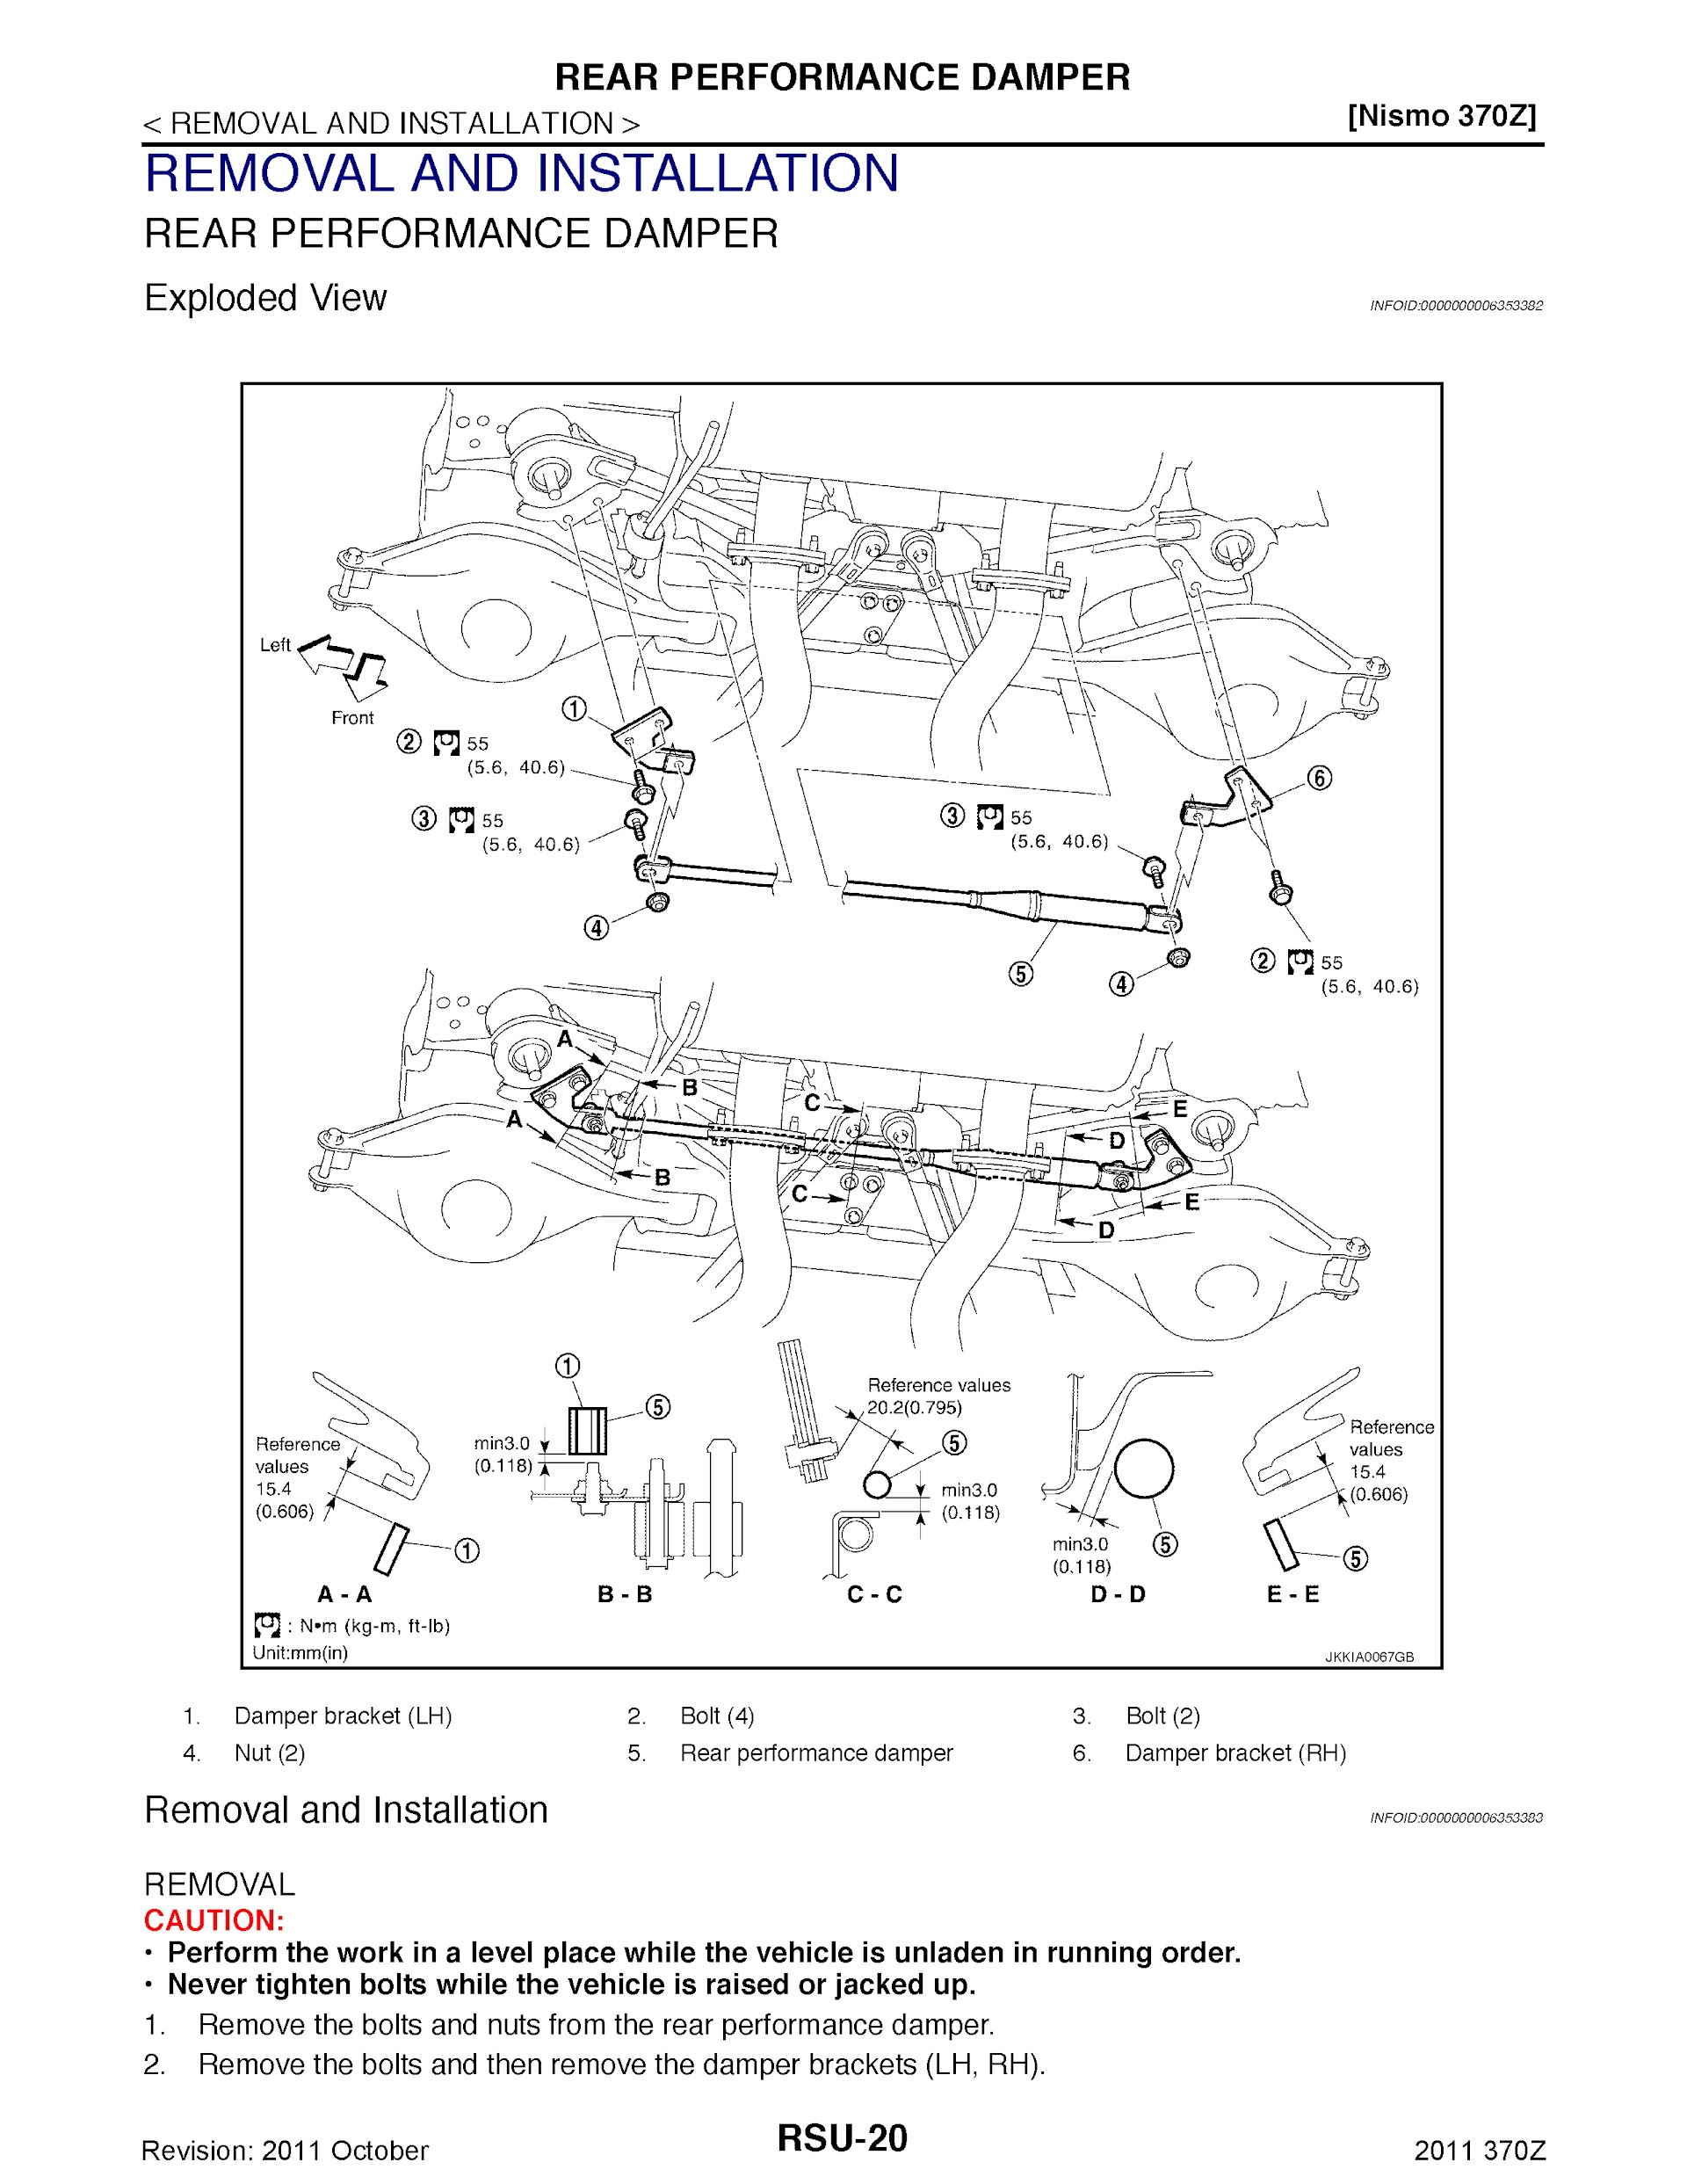 2011 Nissan 370Z Repair Manual